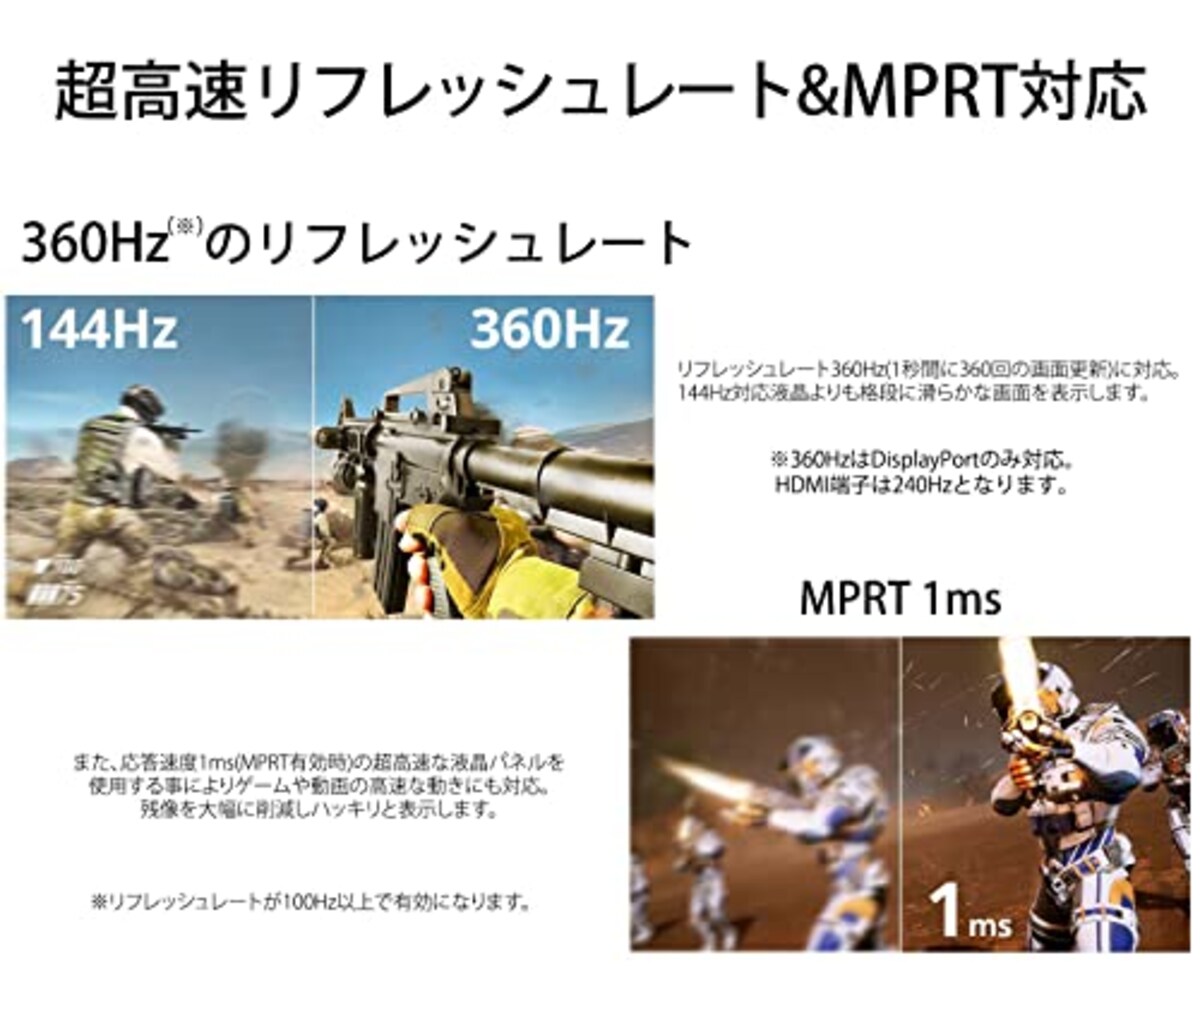  【Amazon.co.jp限定】JAPANNEXT 24.5型IPS フルHDパネル搭載360Hz対応ゲーミングモニター A-360 HDMI DP画像3 